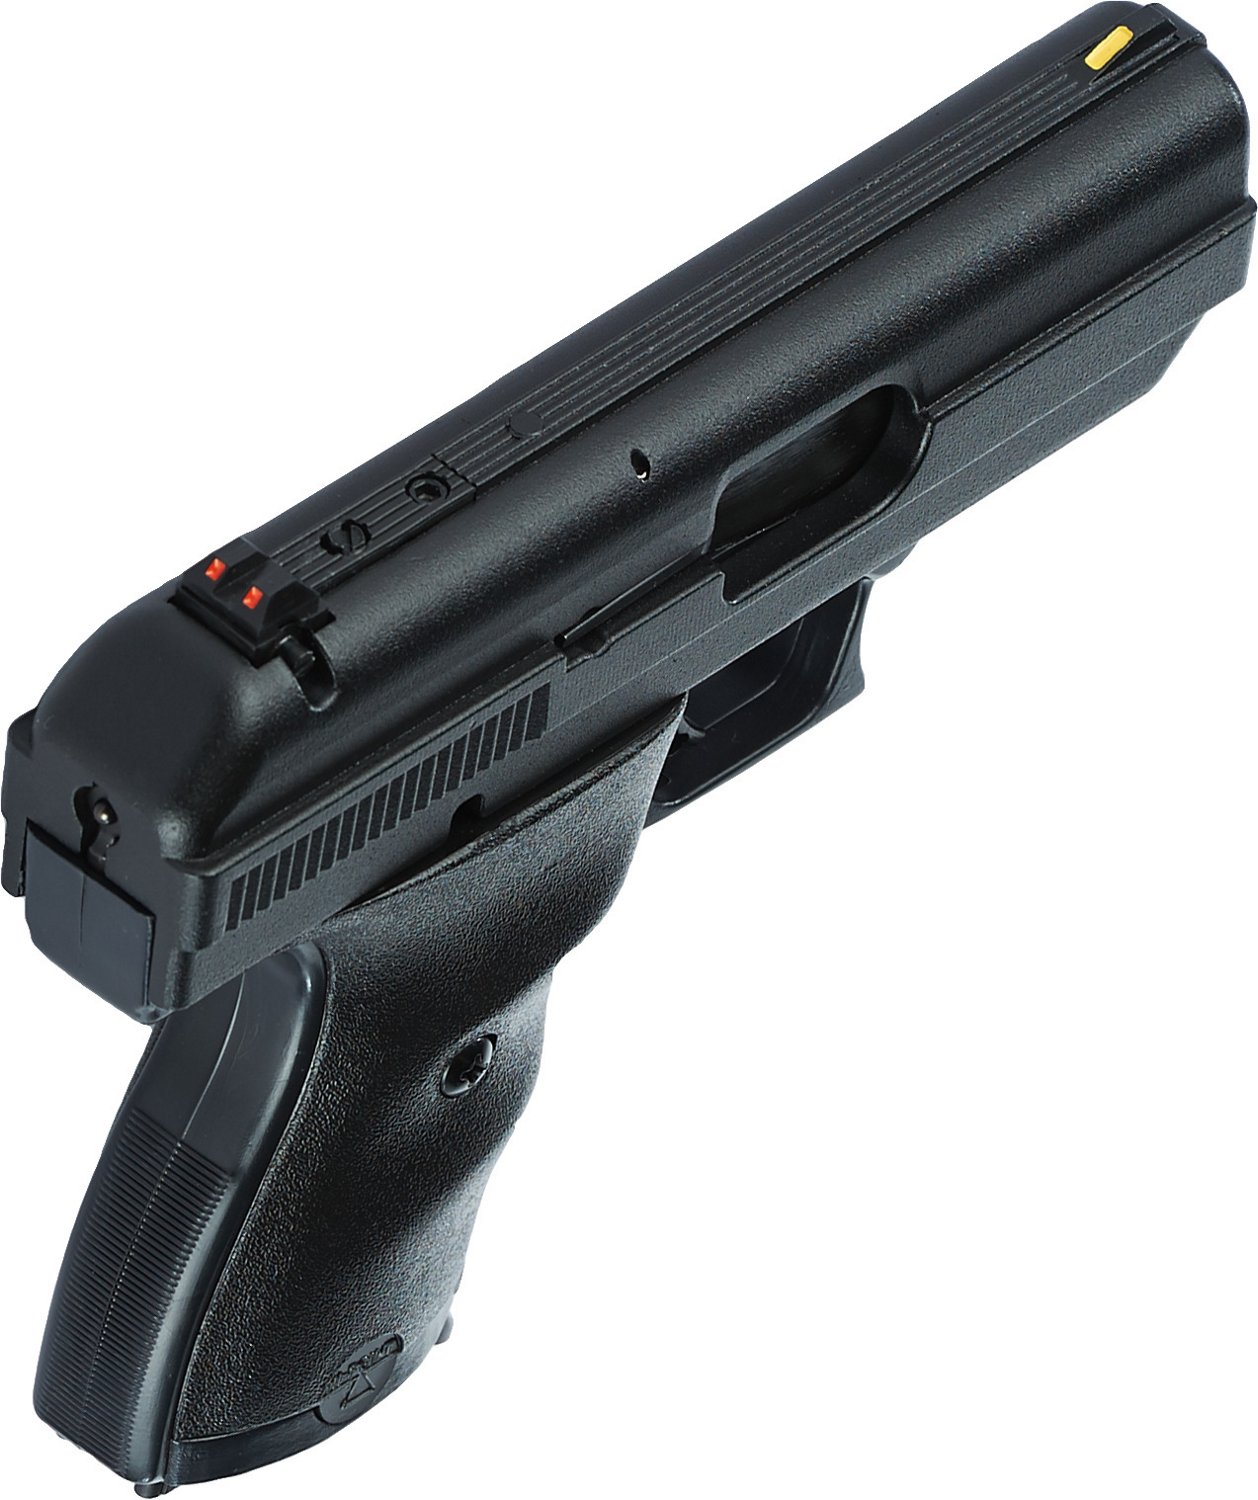 Hi-Point® Firearms: 9MM Handguns